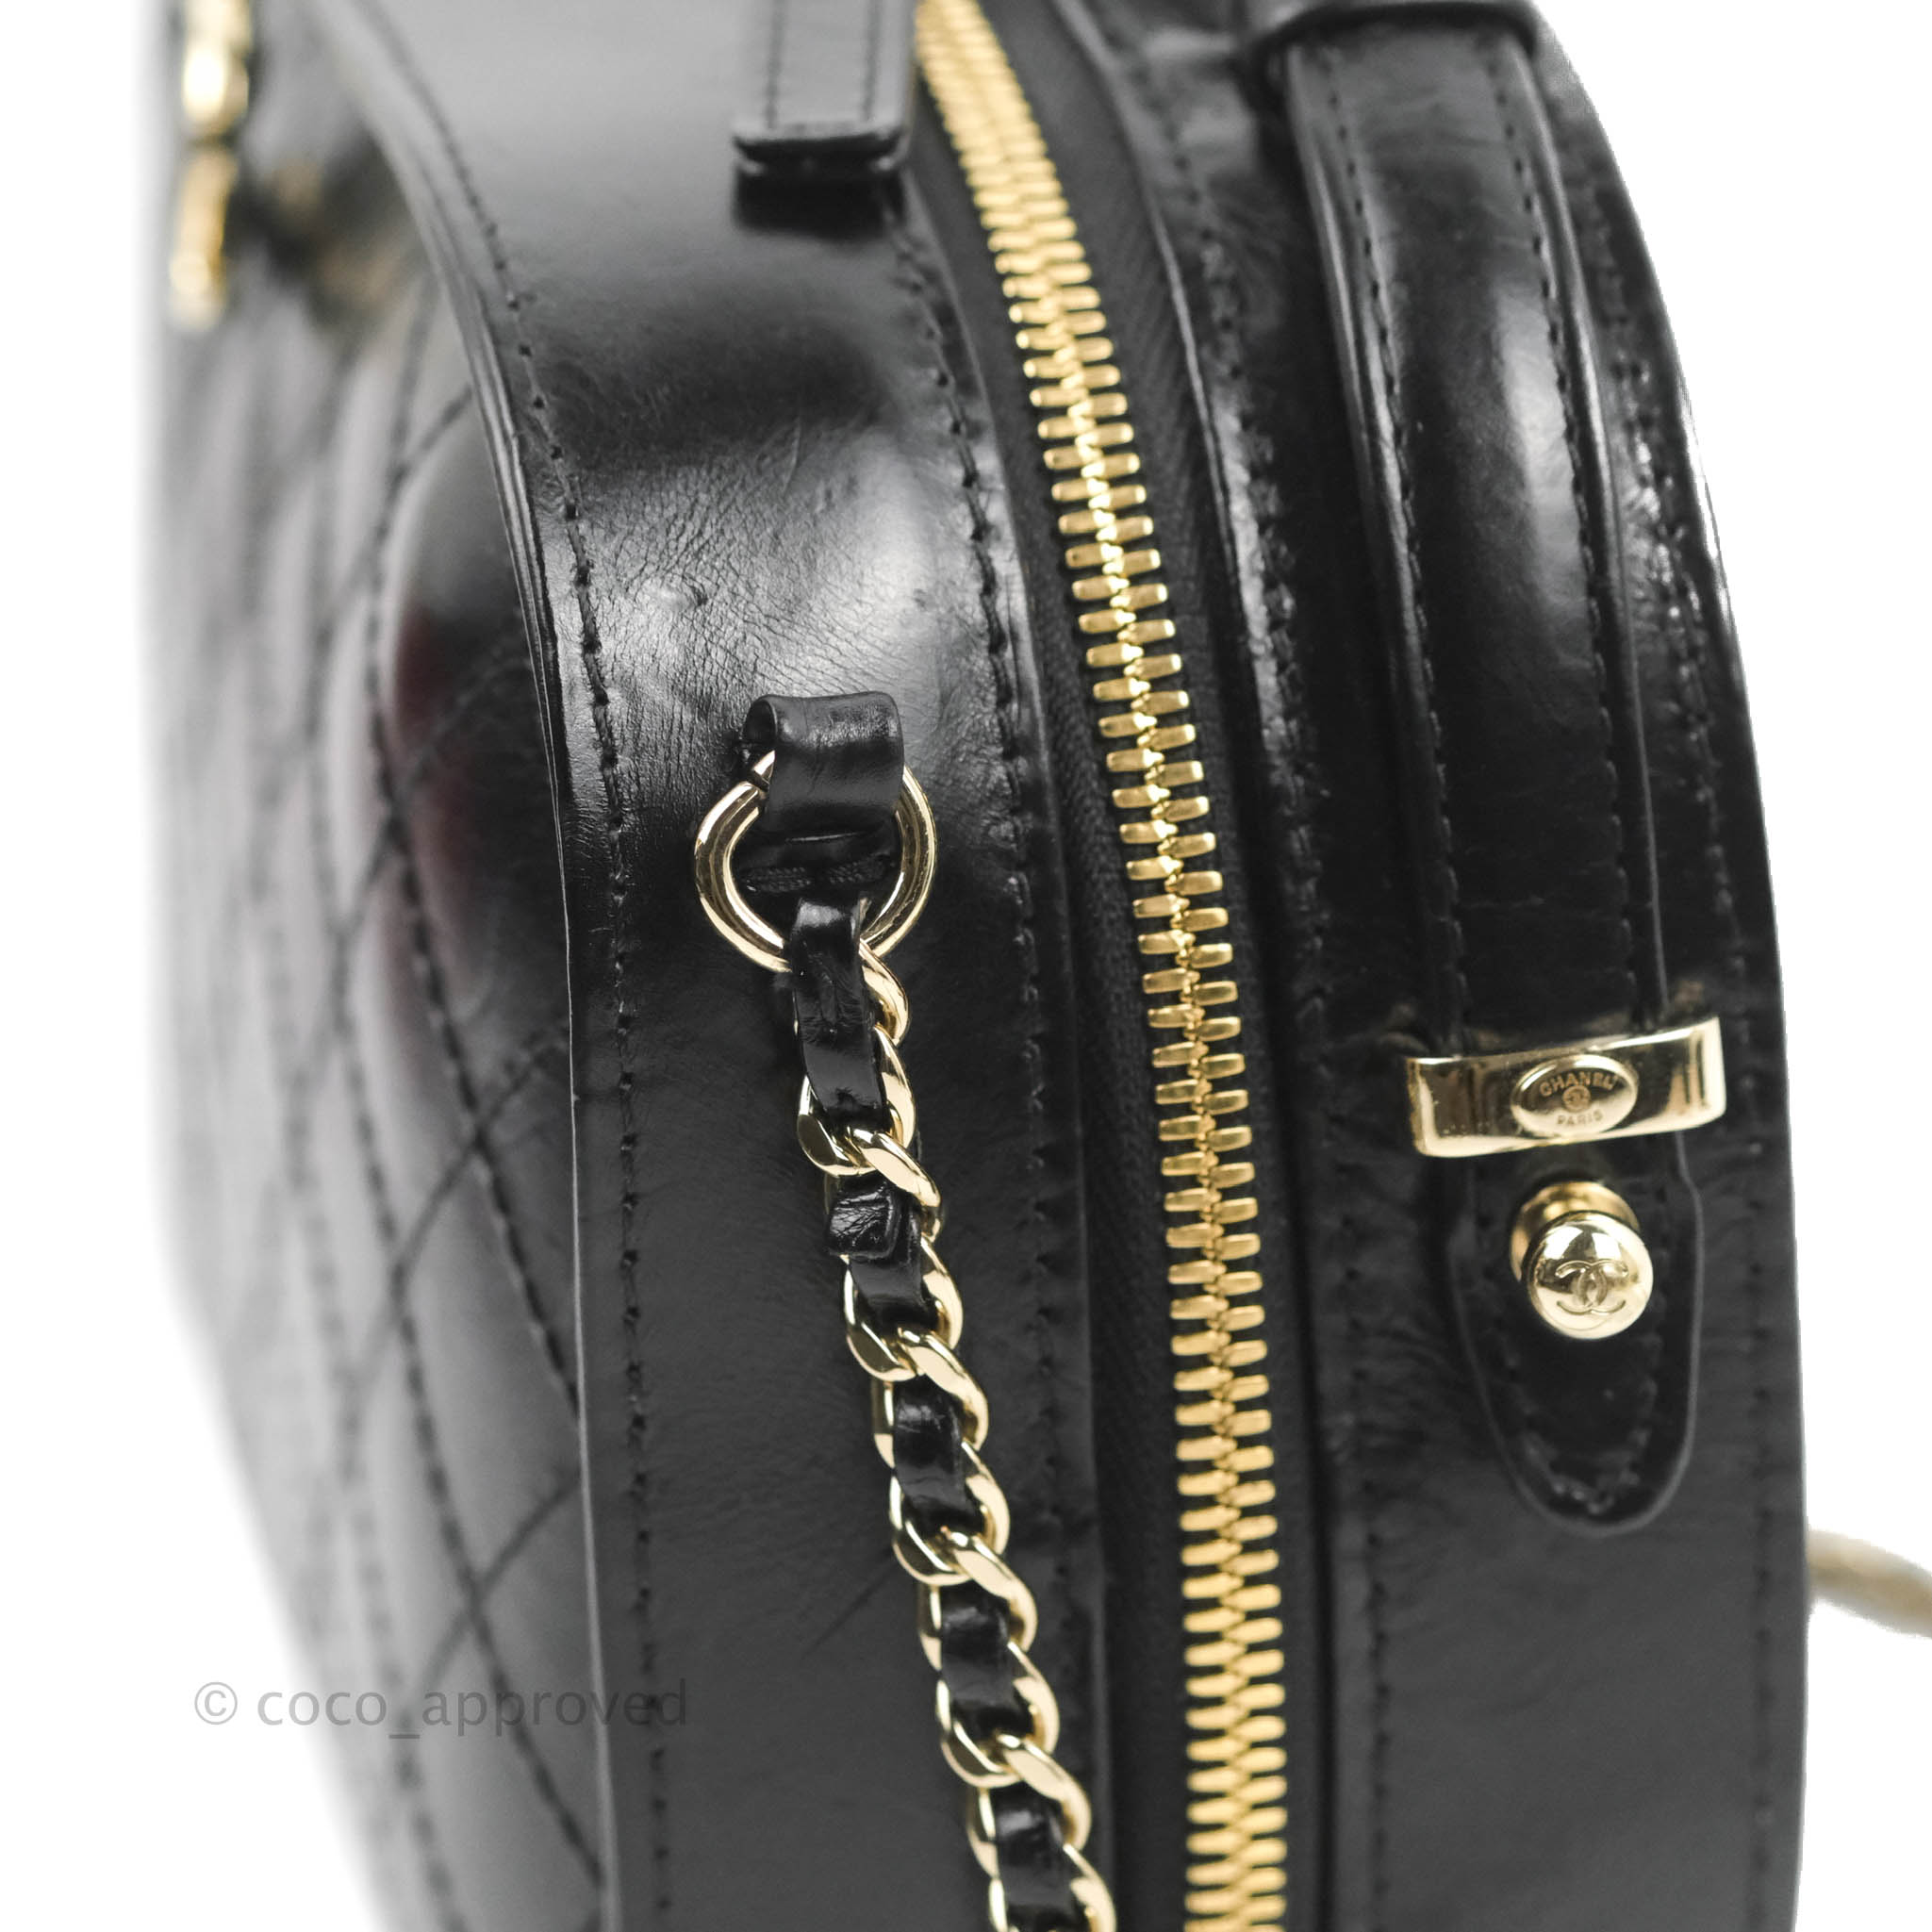 Chanel Small Vanity Case Bag in Calfskin/Raffia — UFO No More